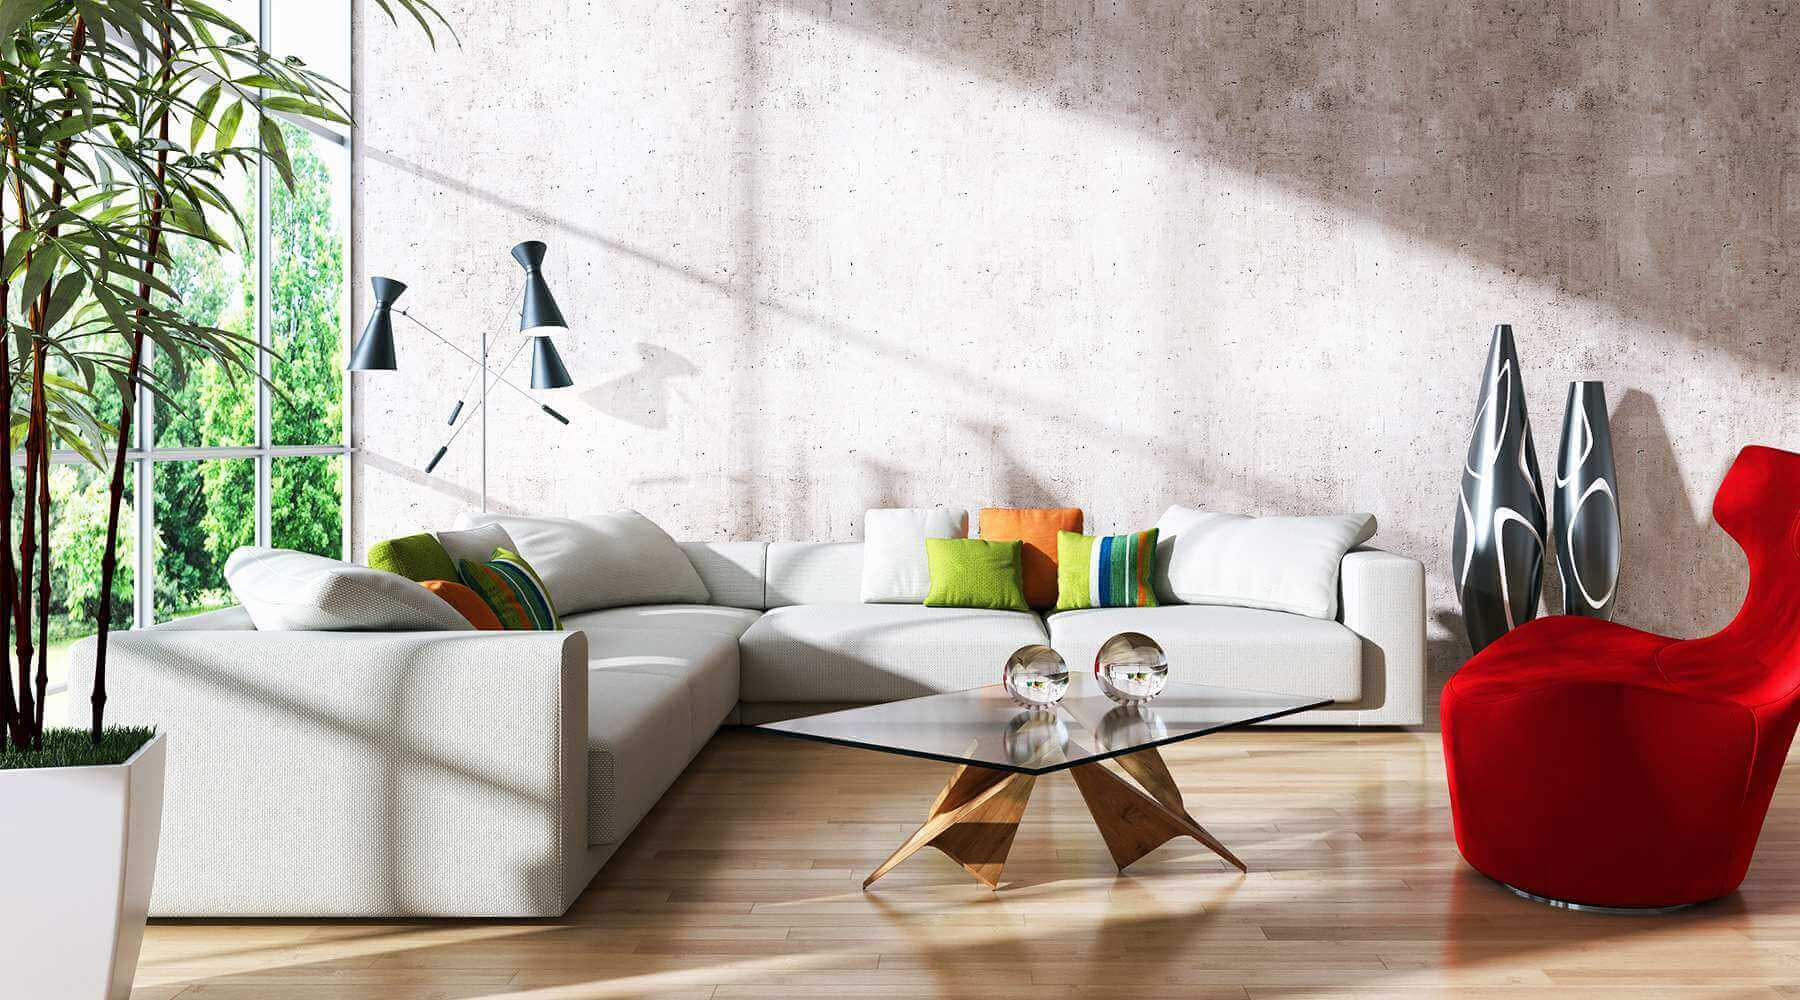 Dream Sofa Home - Your Dream Sofa, Designed by You